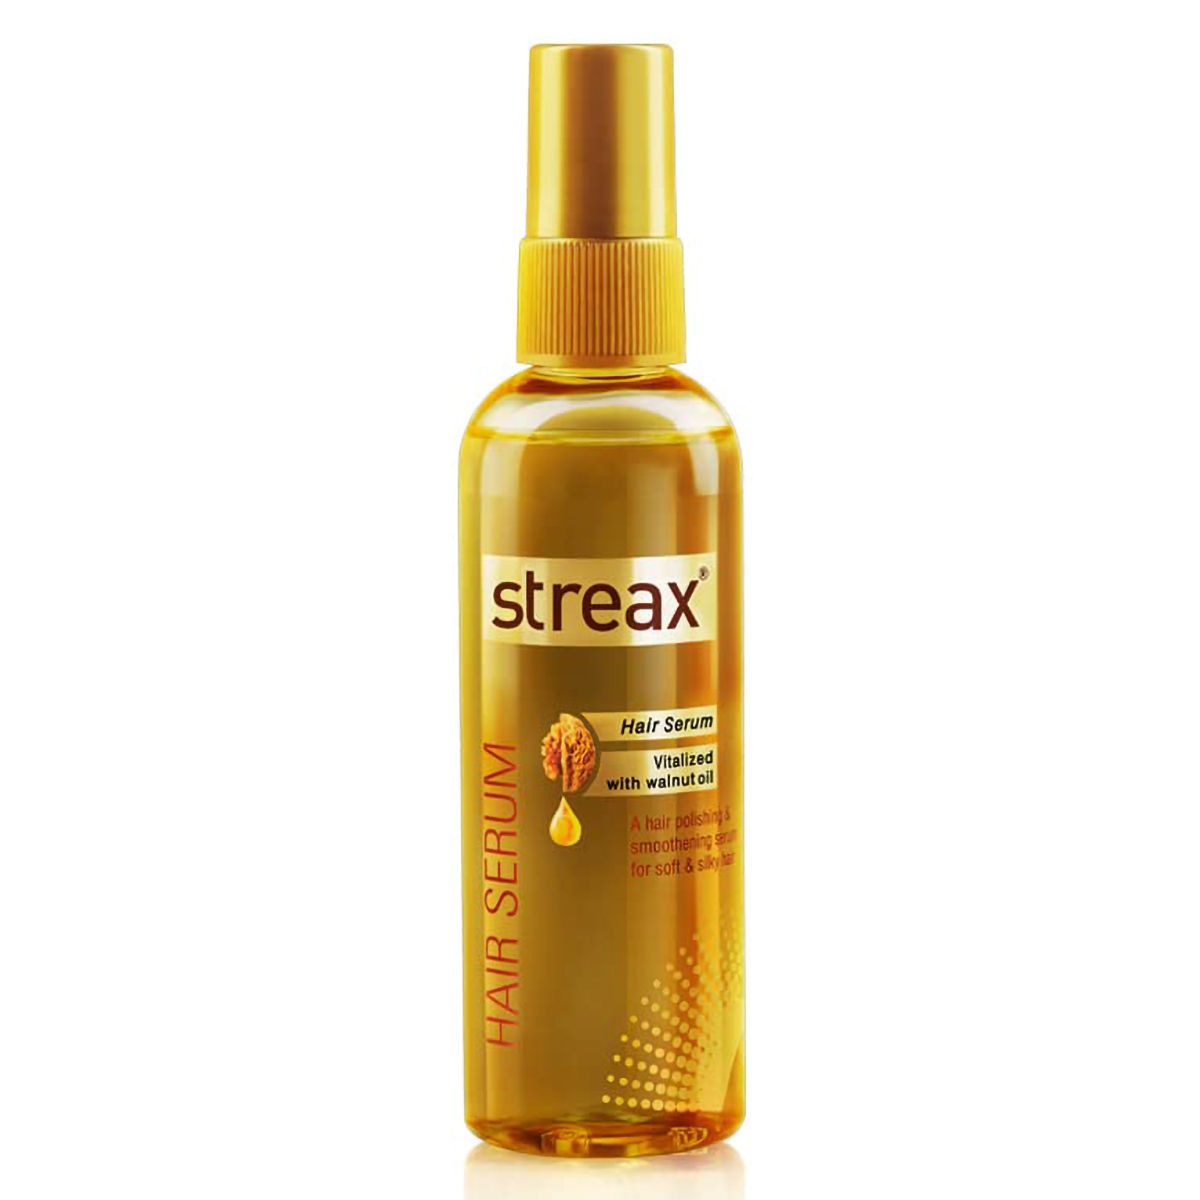 Buy Streax Hair Serum, 100 ml Online